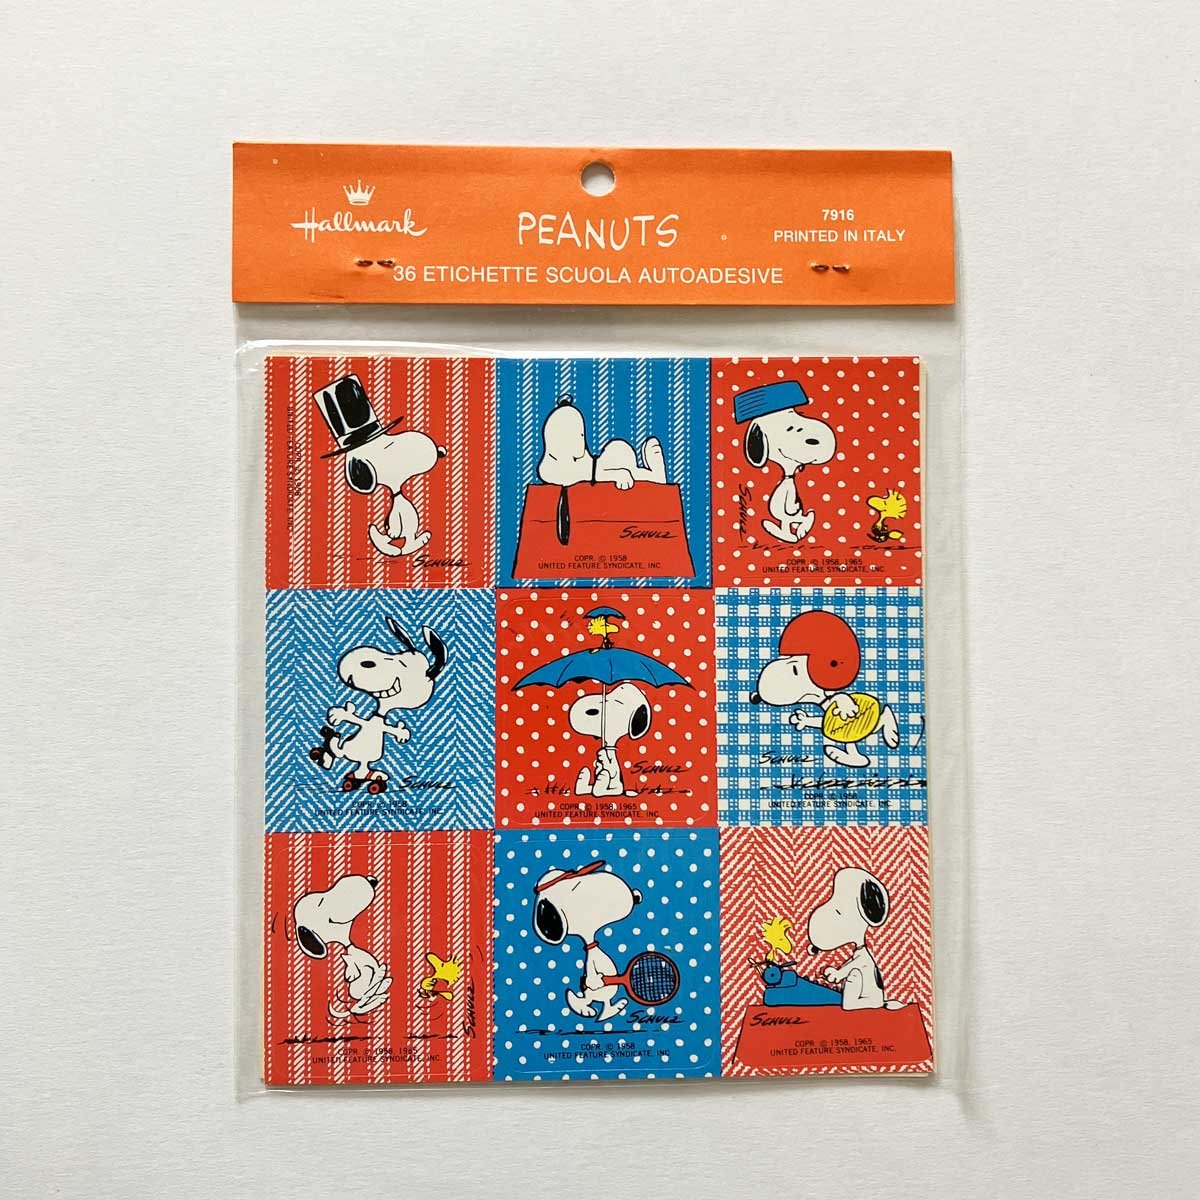 Image of Sachet de stickers Snoopy années 70